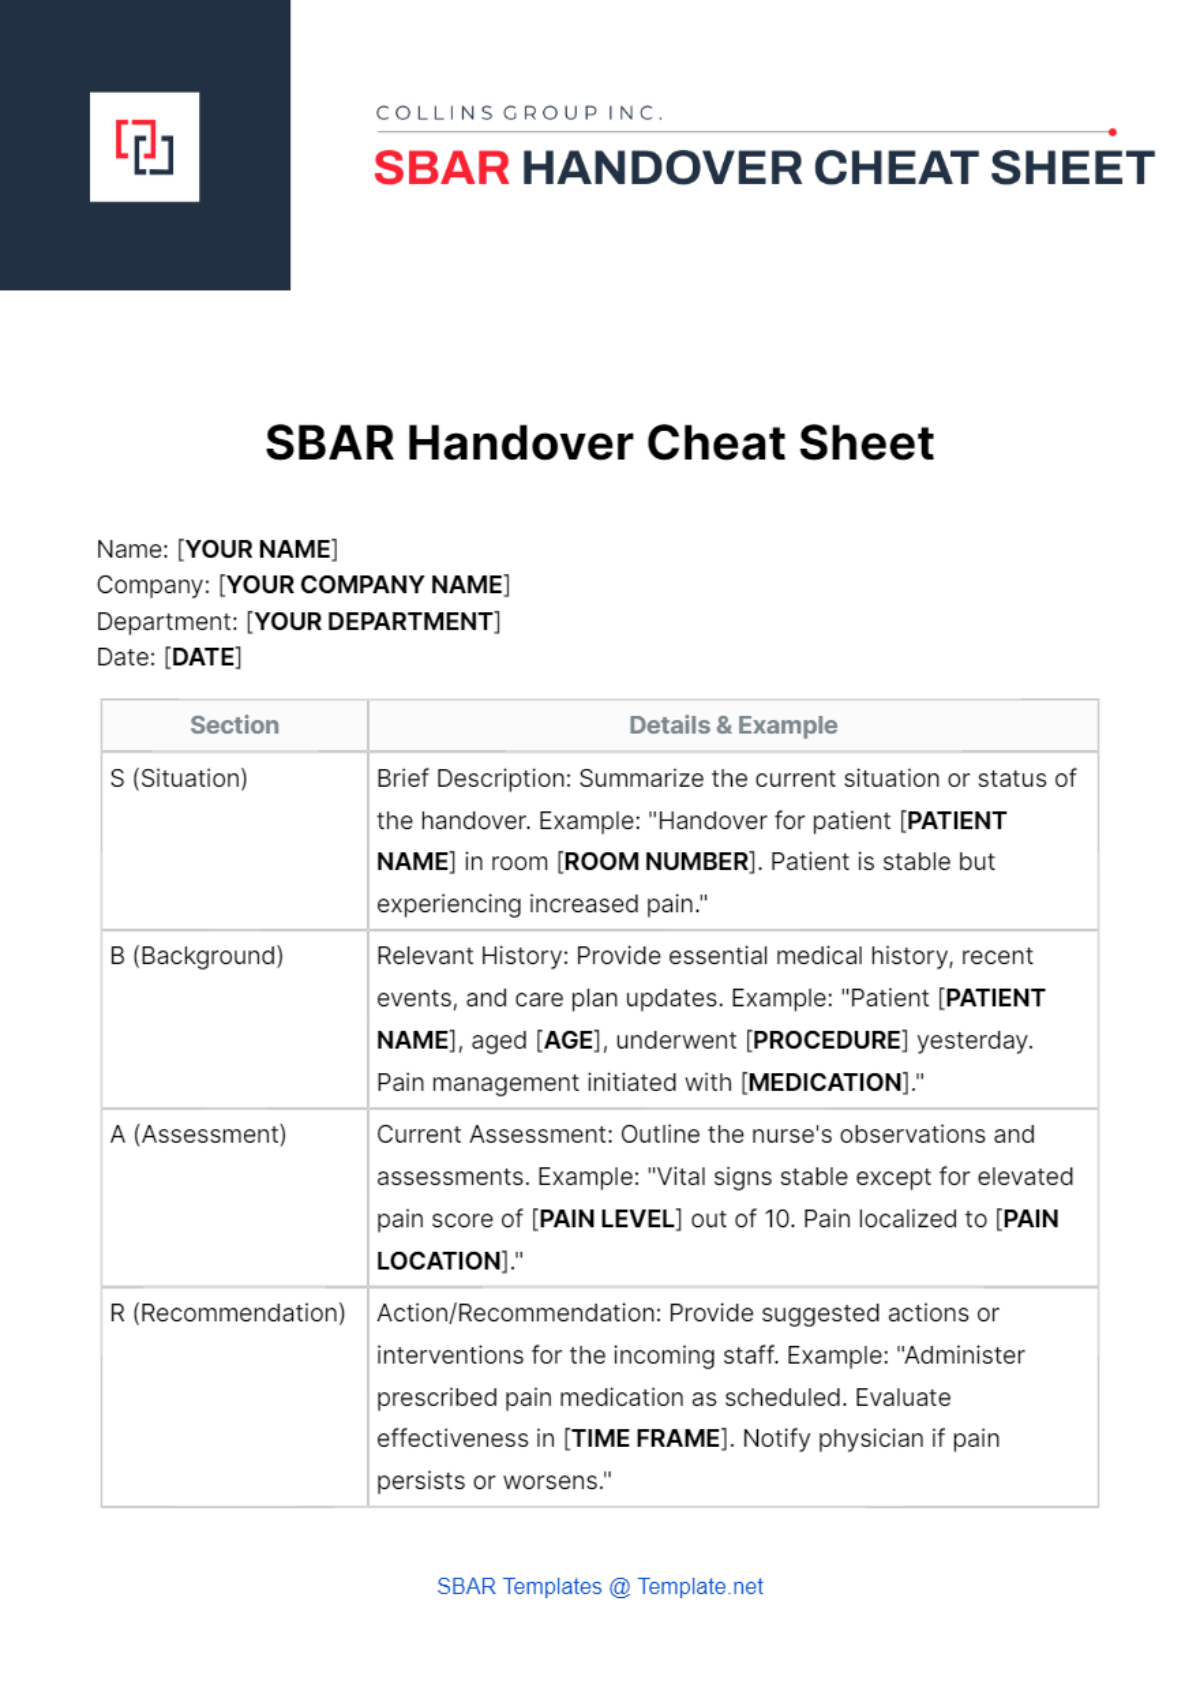 SBAR Handover Cheat Sheet Template